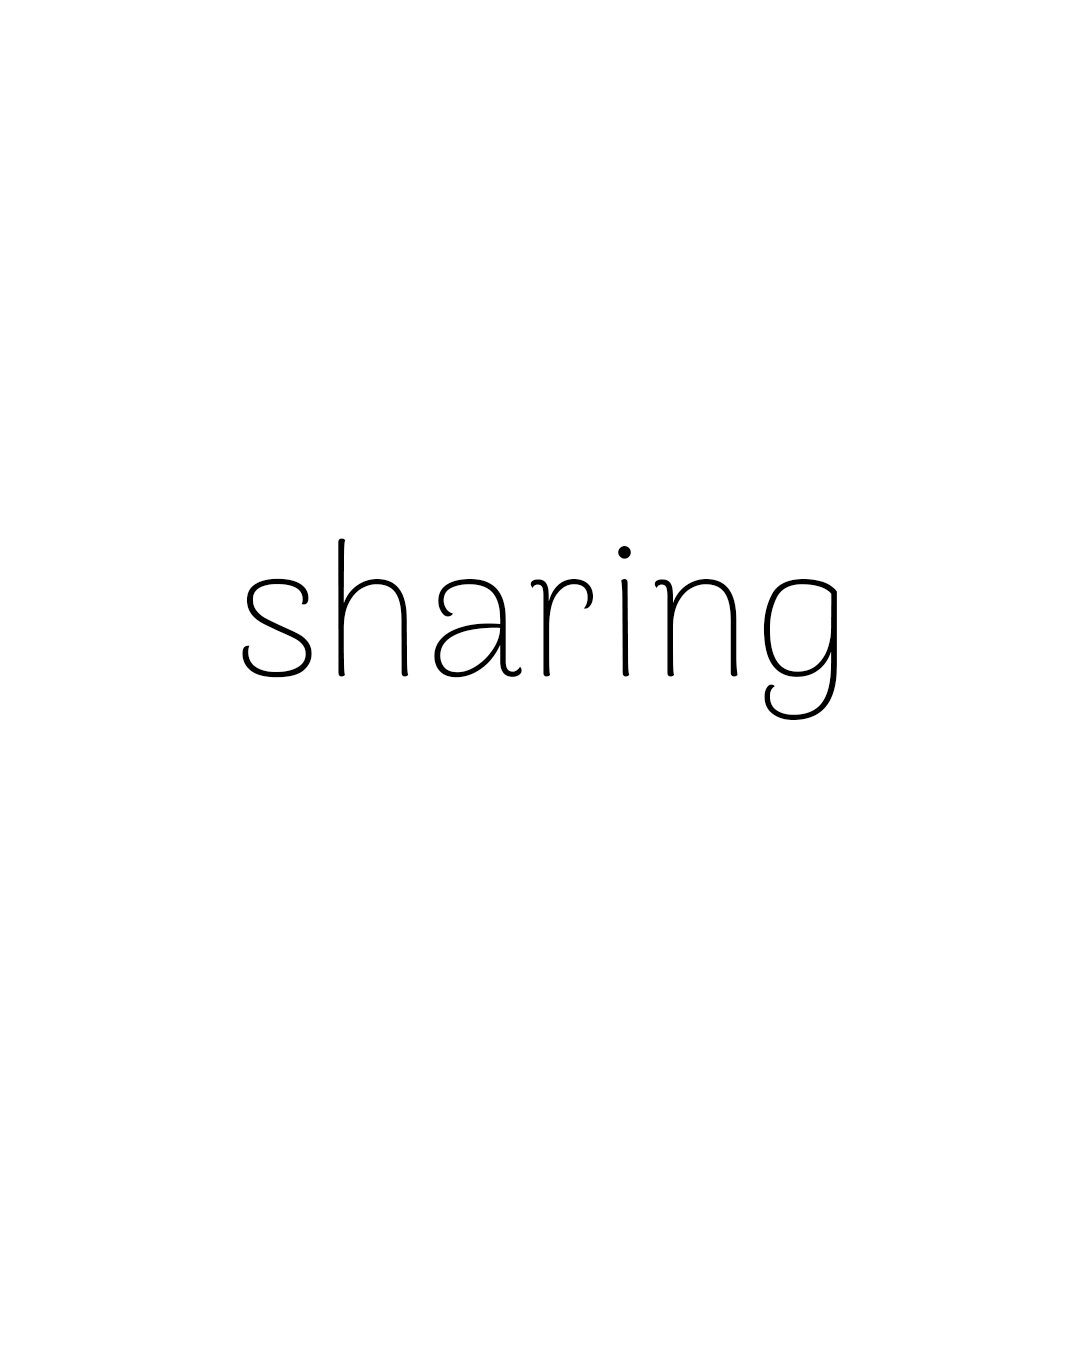 sharing.jpg